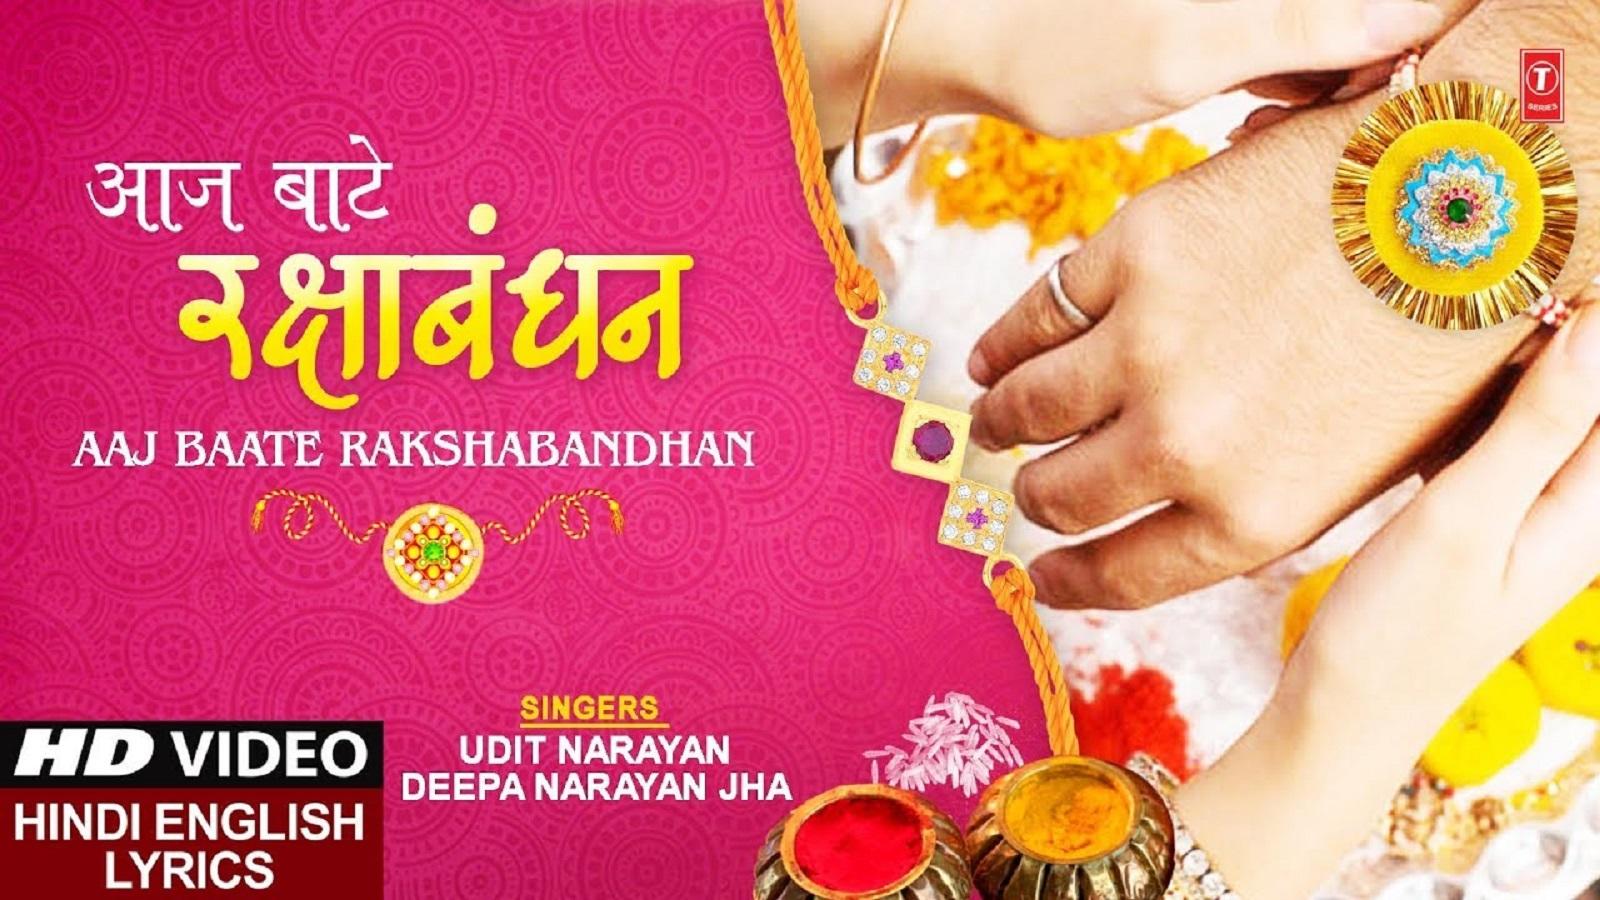 Raksha Bandhan Ka Gana Latest Hindi Song j Baate Rakshabandhan Sung By Udit Narayan And Deepa Narayan Jha